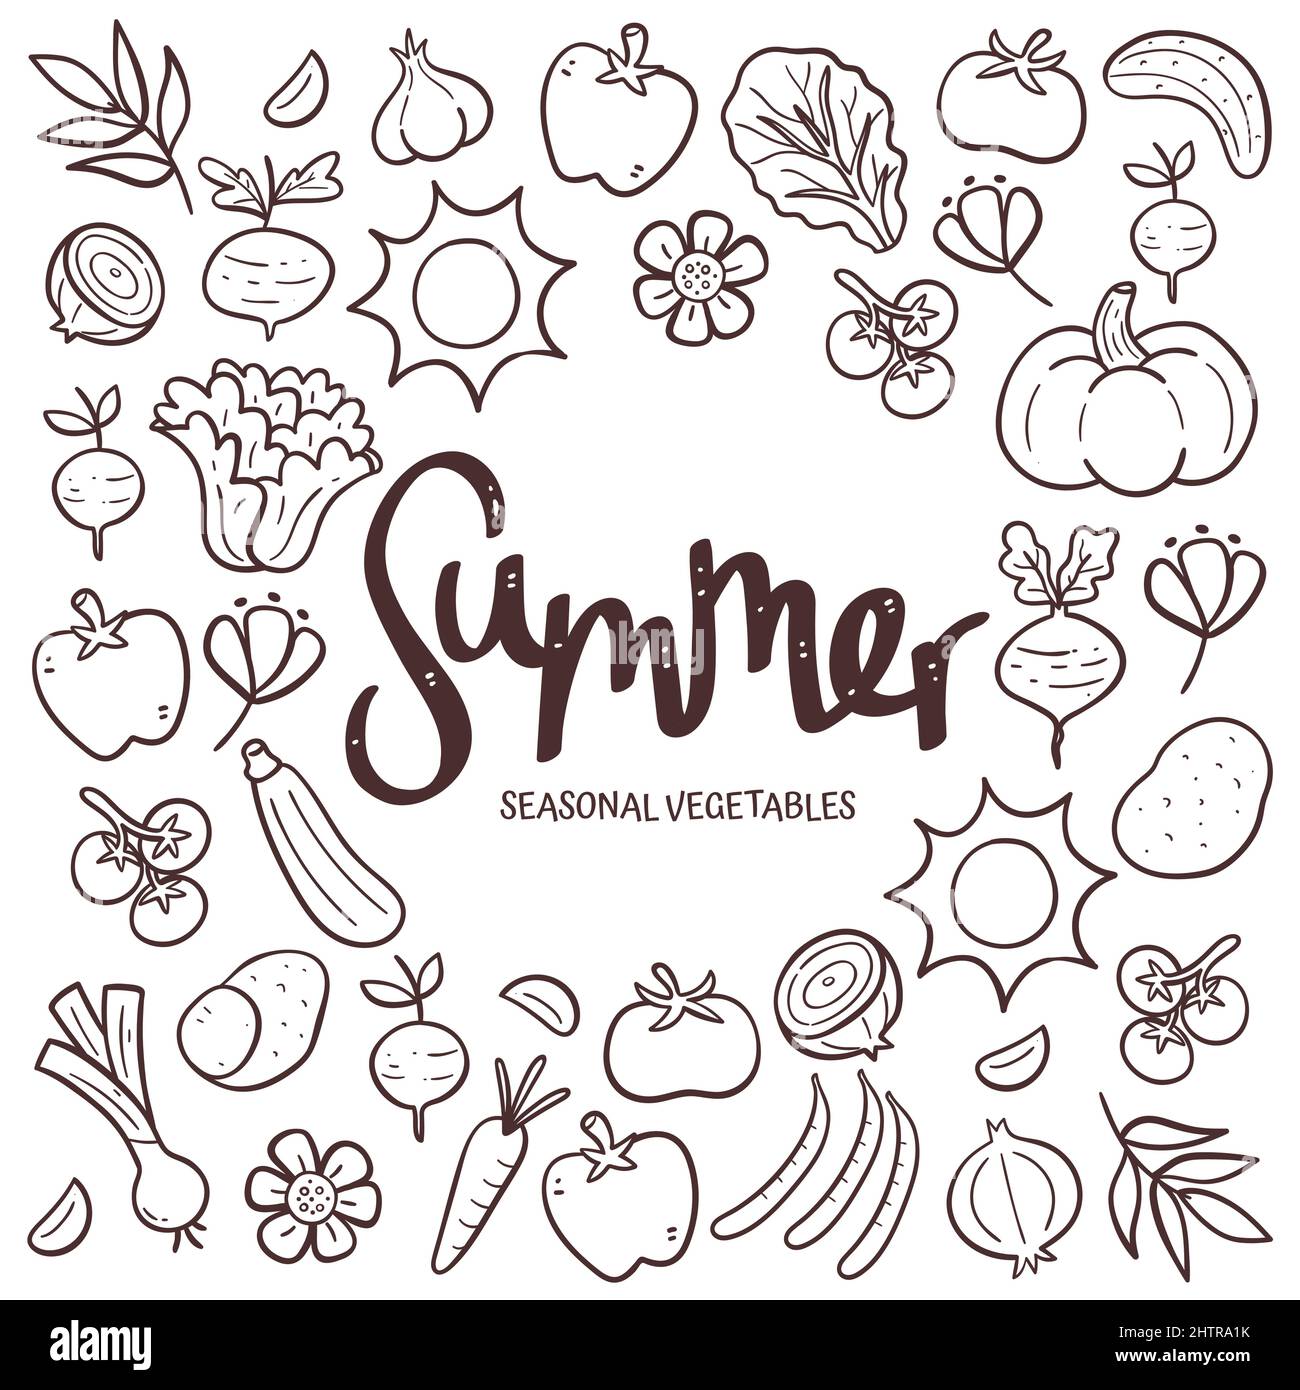 Saisonales Gemüse im Hintergrund. Handgezeichnetes Sommergemüse Komposition aus Doodle Vektor-Icons, isoliert auf weißem Hintergrund. Stock Vektor